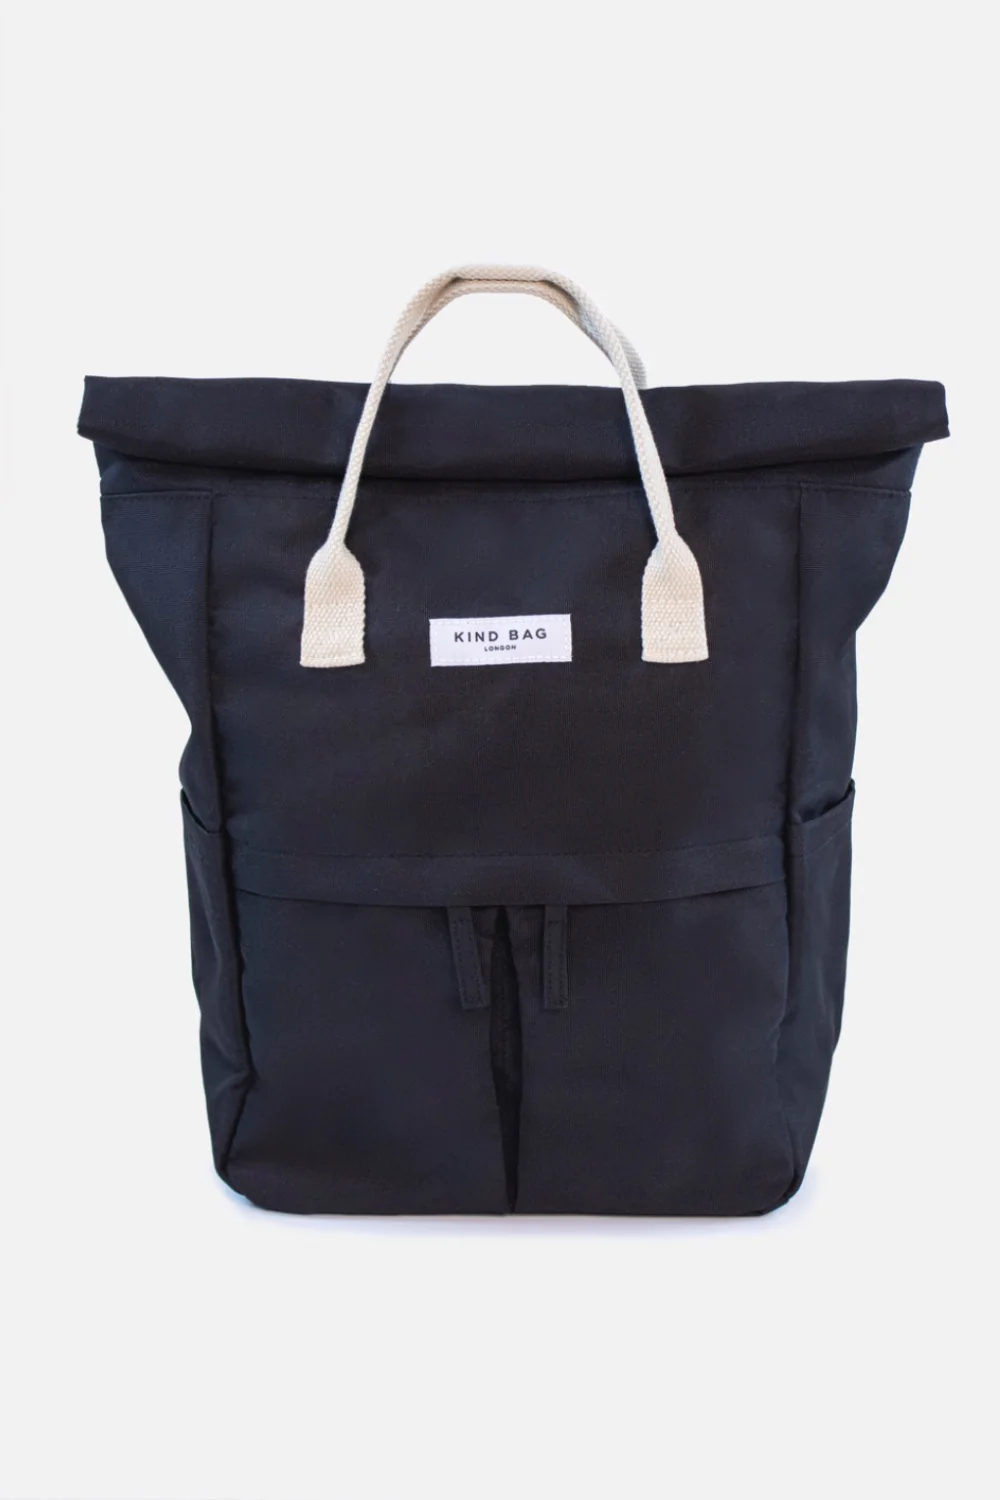 kind-bag-medium-hackney-sustainable-backpack-pebble-black